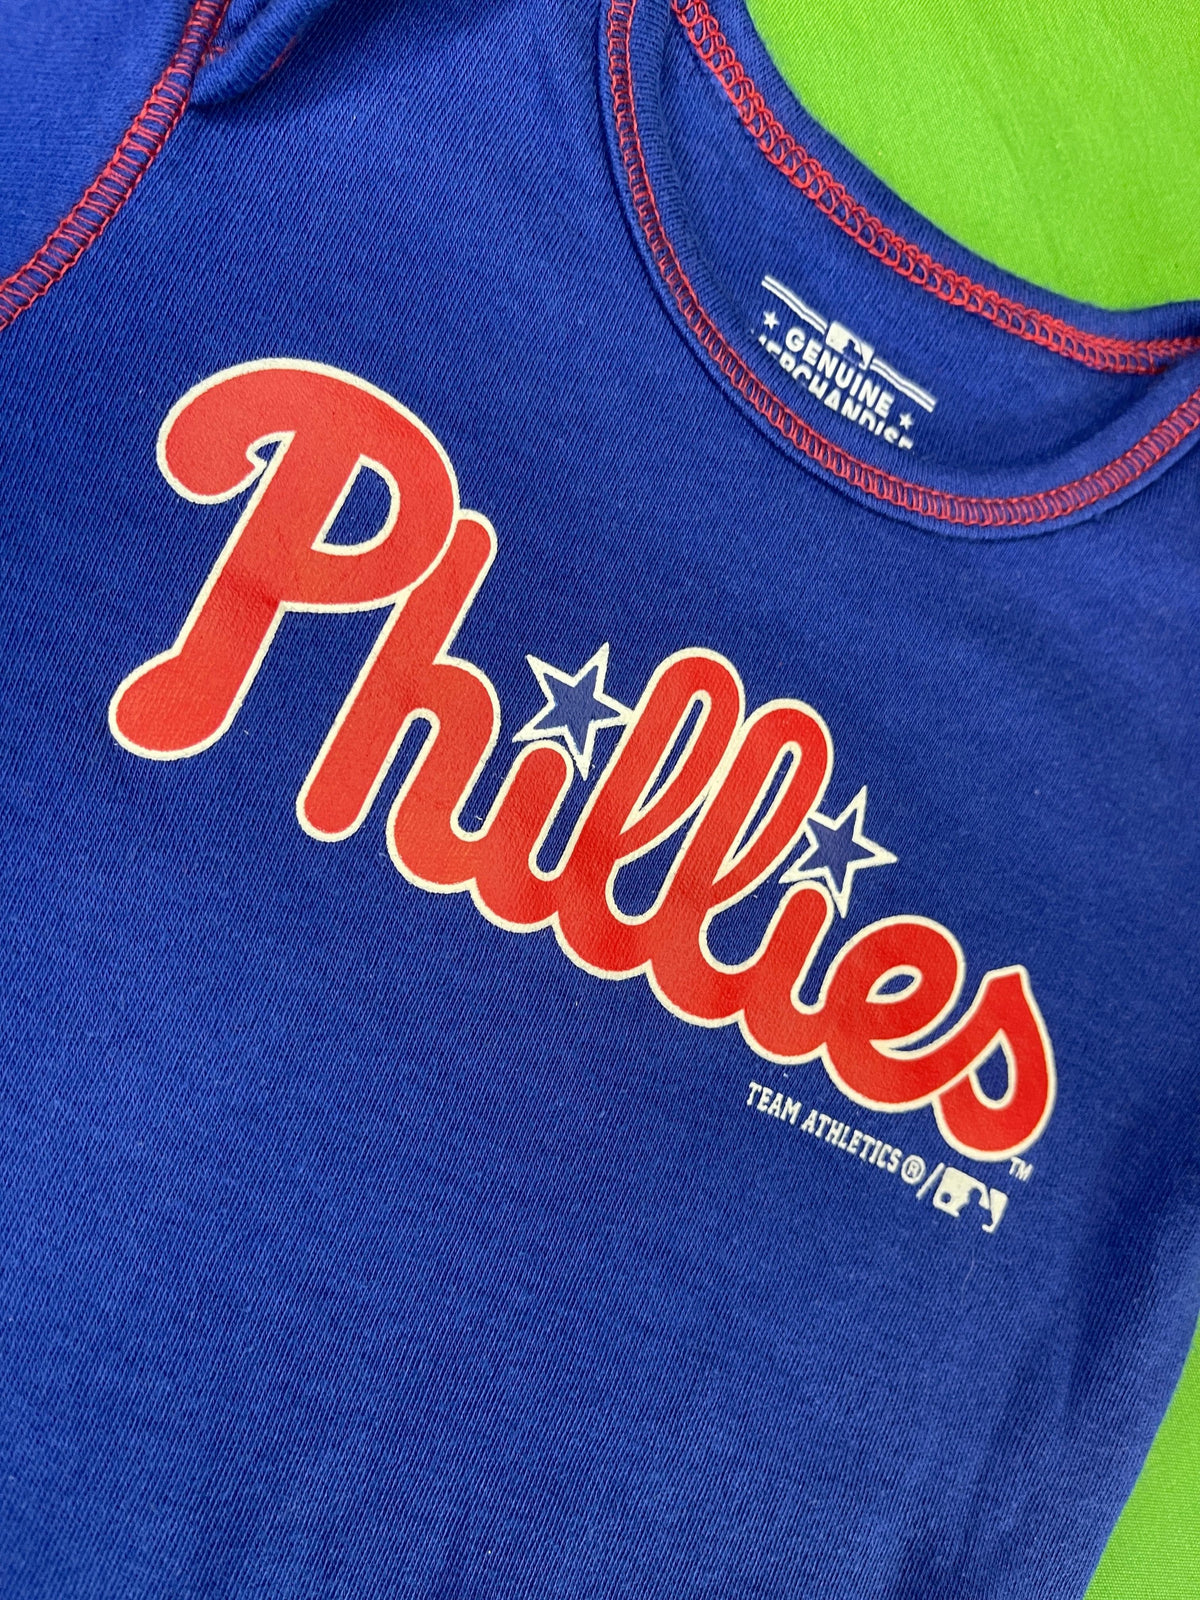 MLB Philadelphia Phillies Blue Bodysuit/Vest 3-6 months